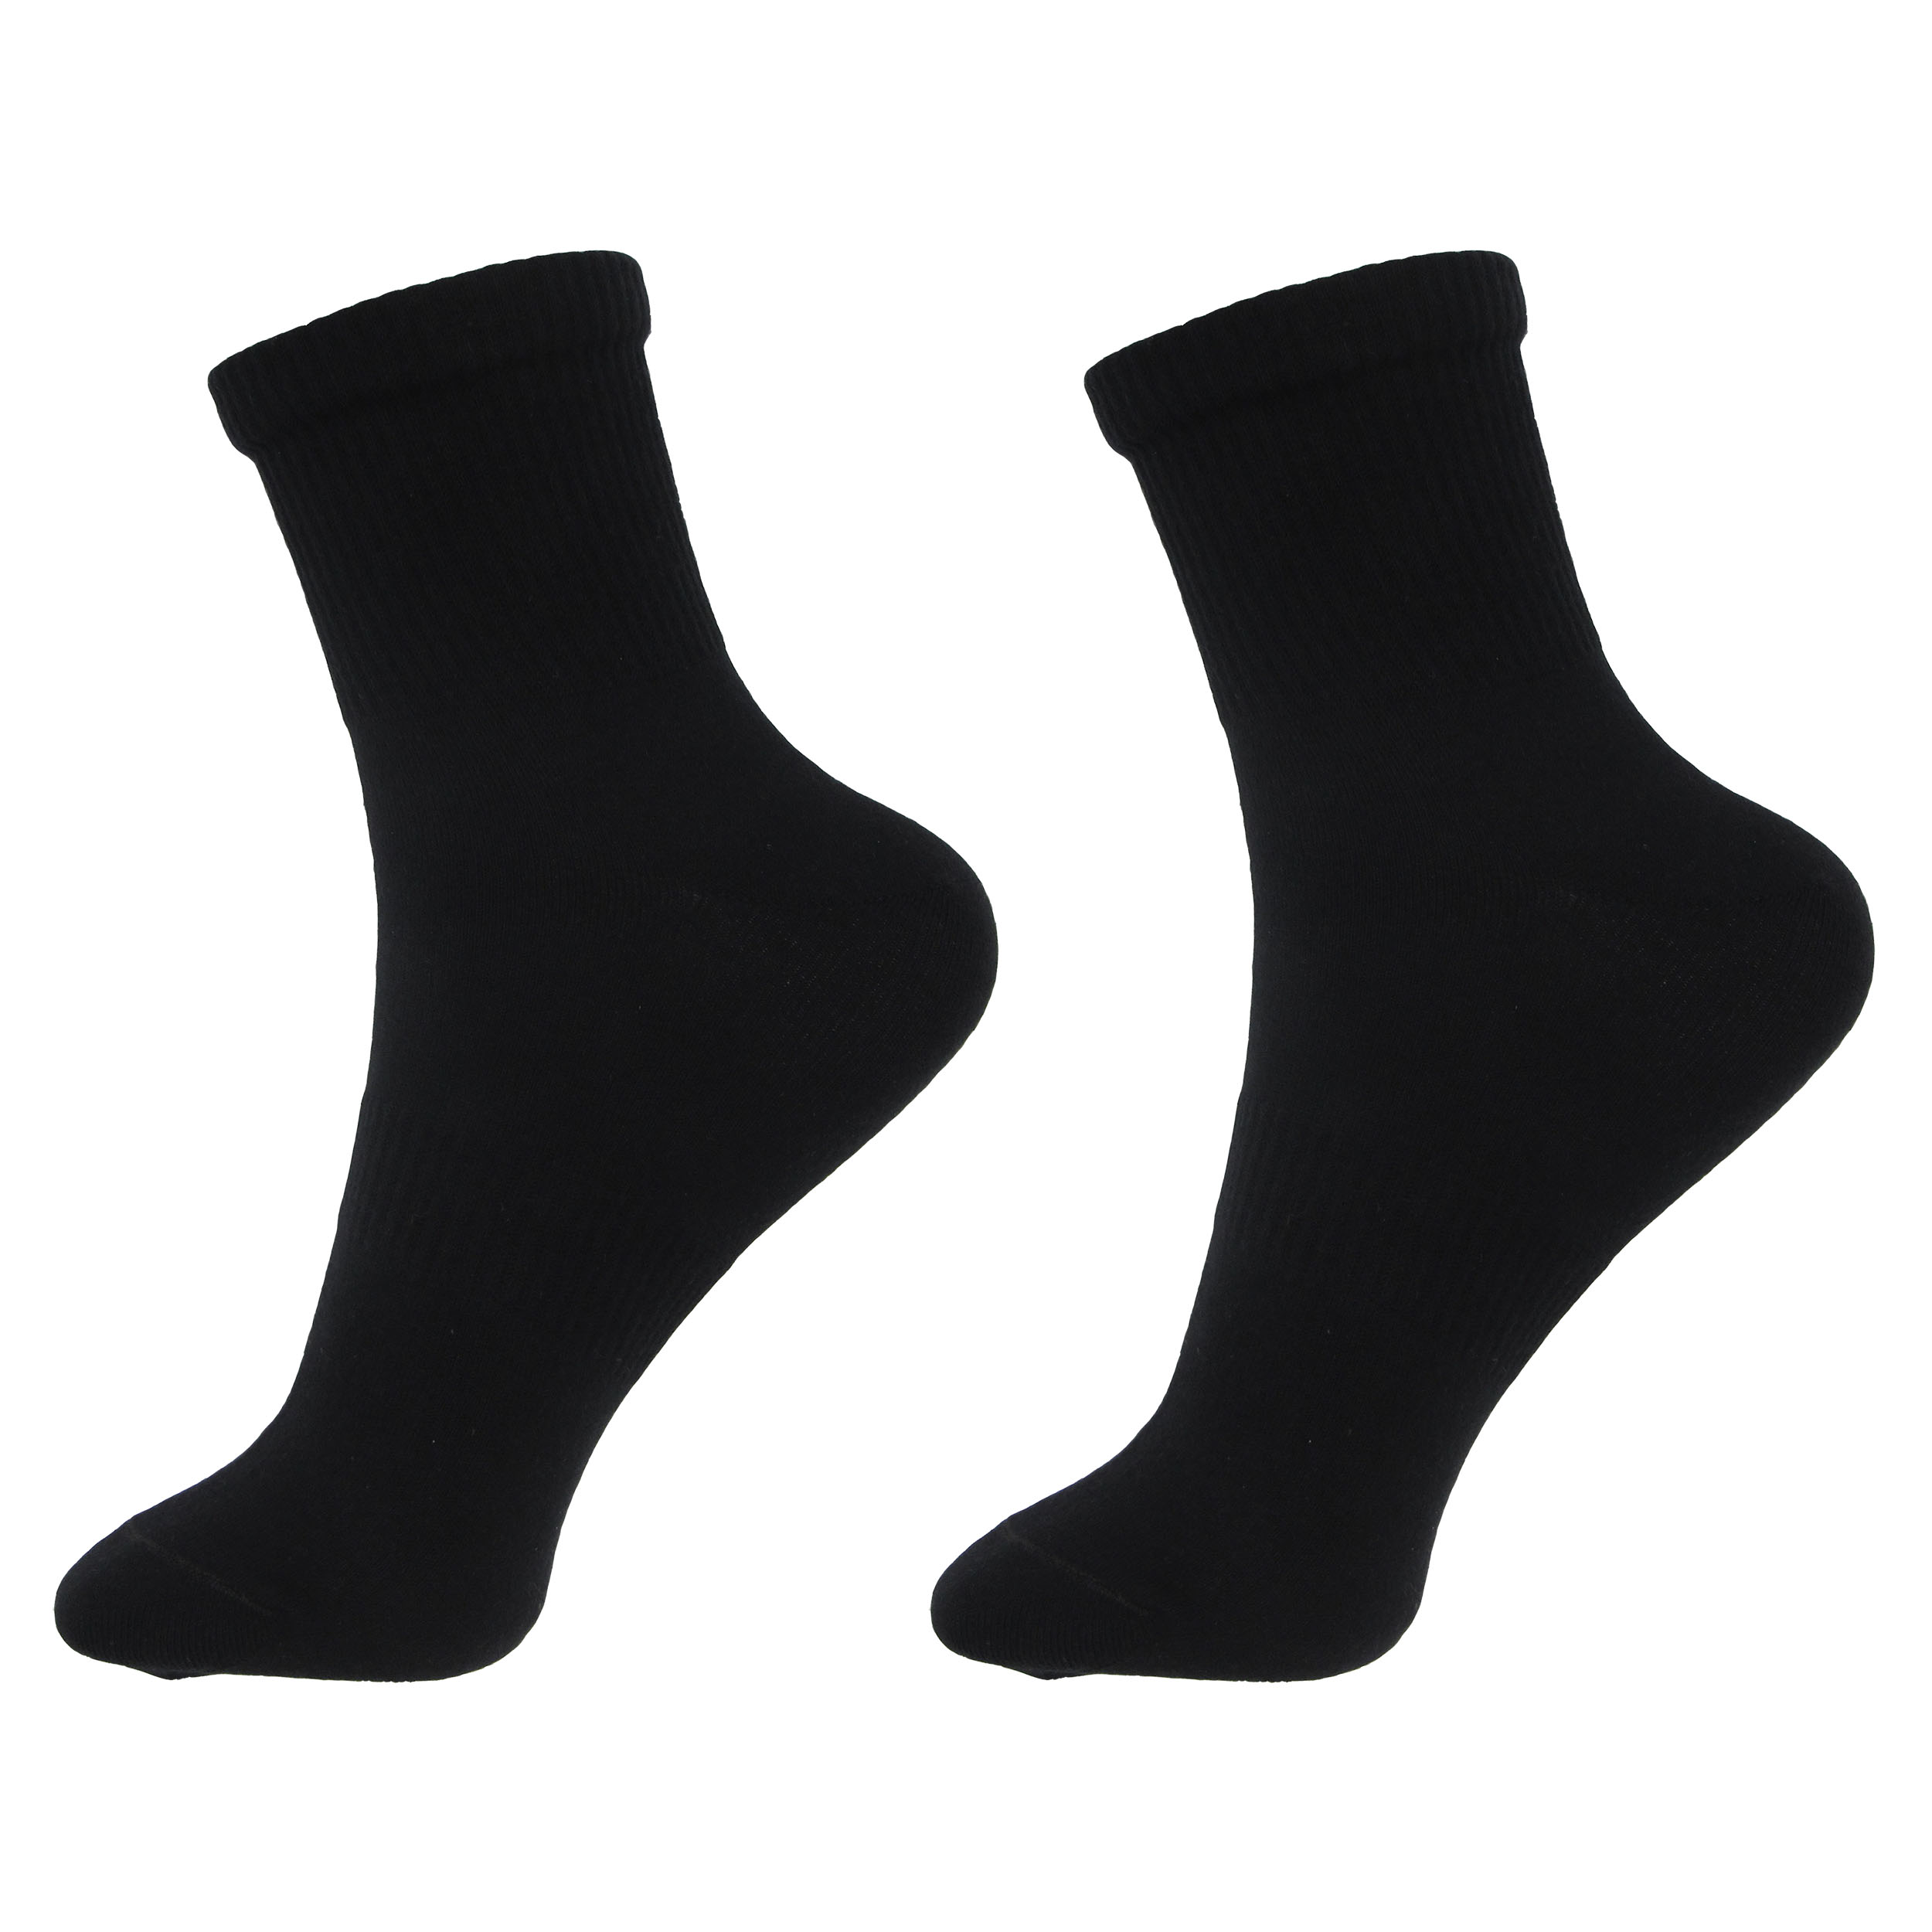  جوراب ورزشی مردانه ادیب کد MNSPT رنگ مشکی بسته دو عددی